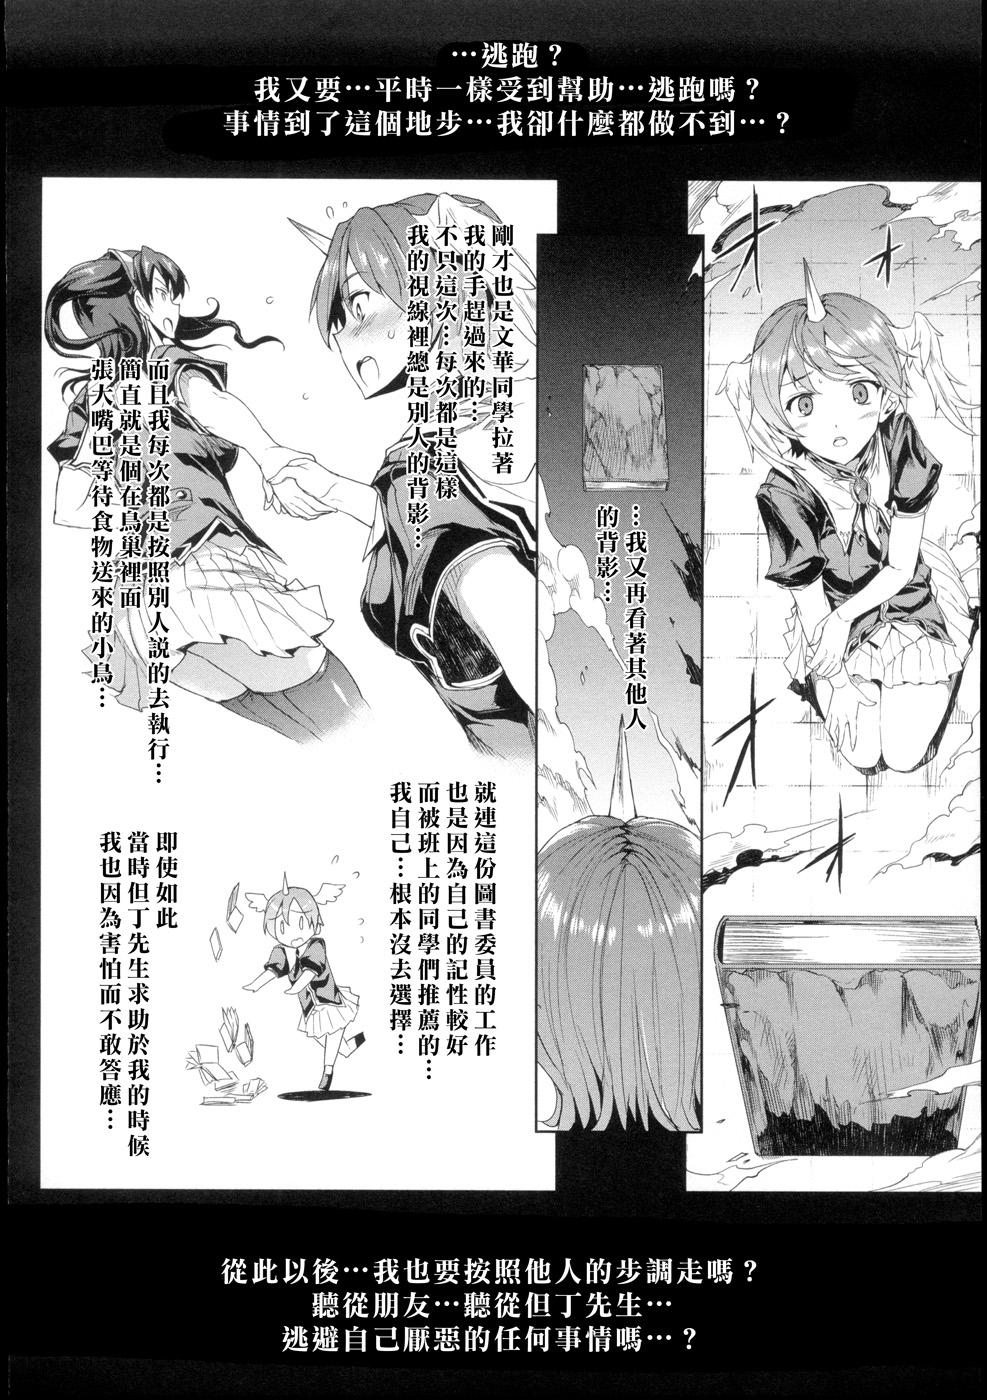 [Erect Sawaru] Shinkyoku no Grimoire -PANDRA saga 2nd story- Ch. 1-4 [Chinese] 72